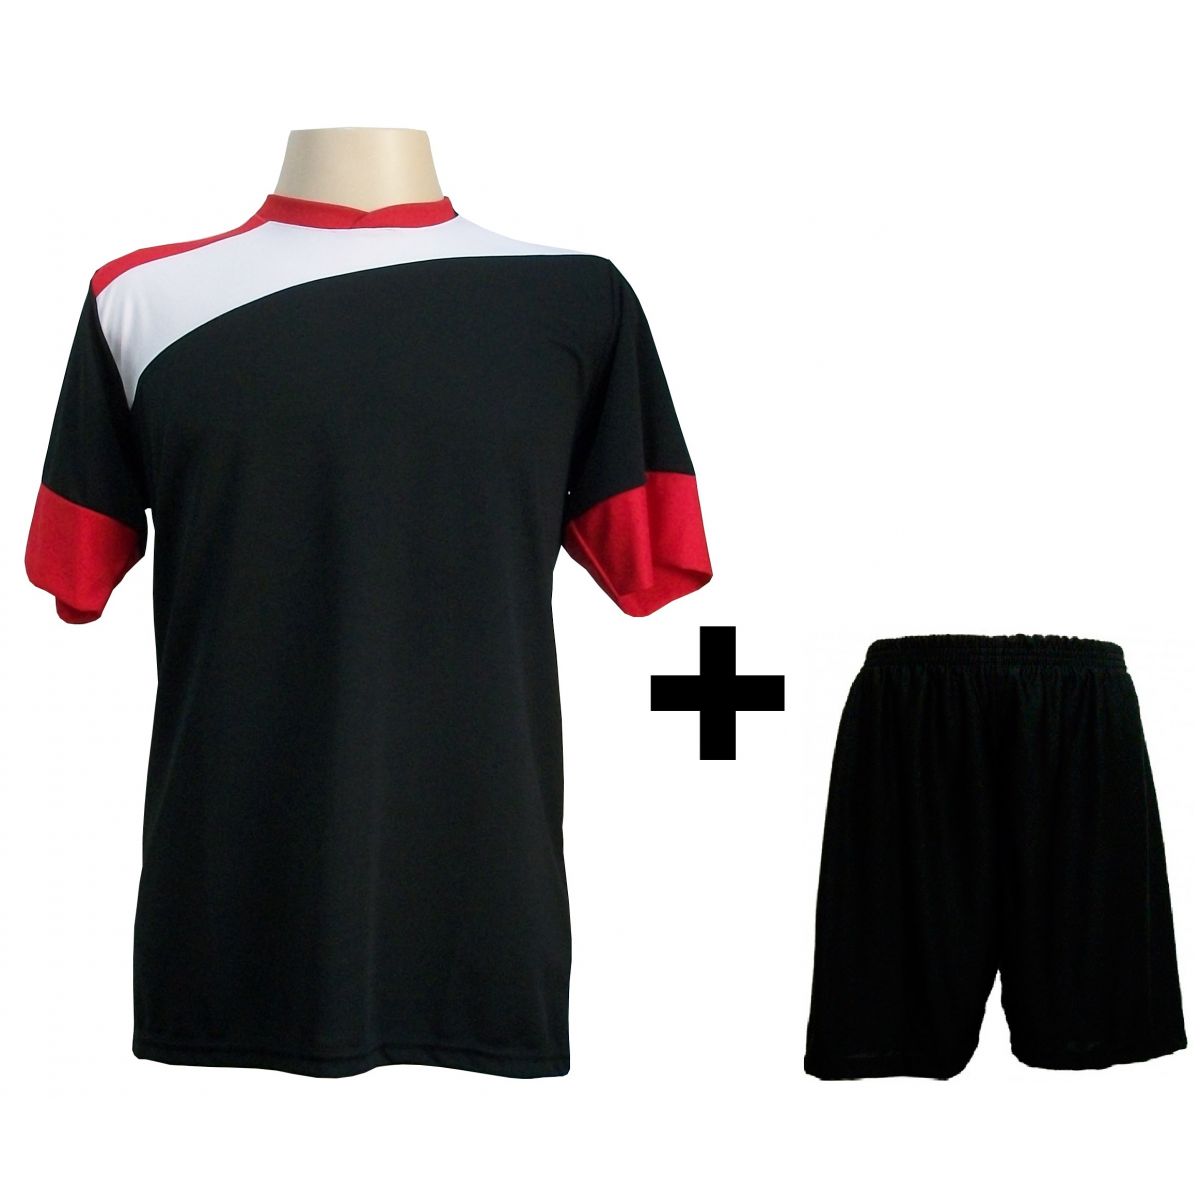 Uniforme Esportivo com 14 camisas modelo Sporting Preto/Branco/Vermelho + 14 calções modelo Madrid Preto + Brindes